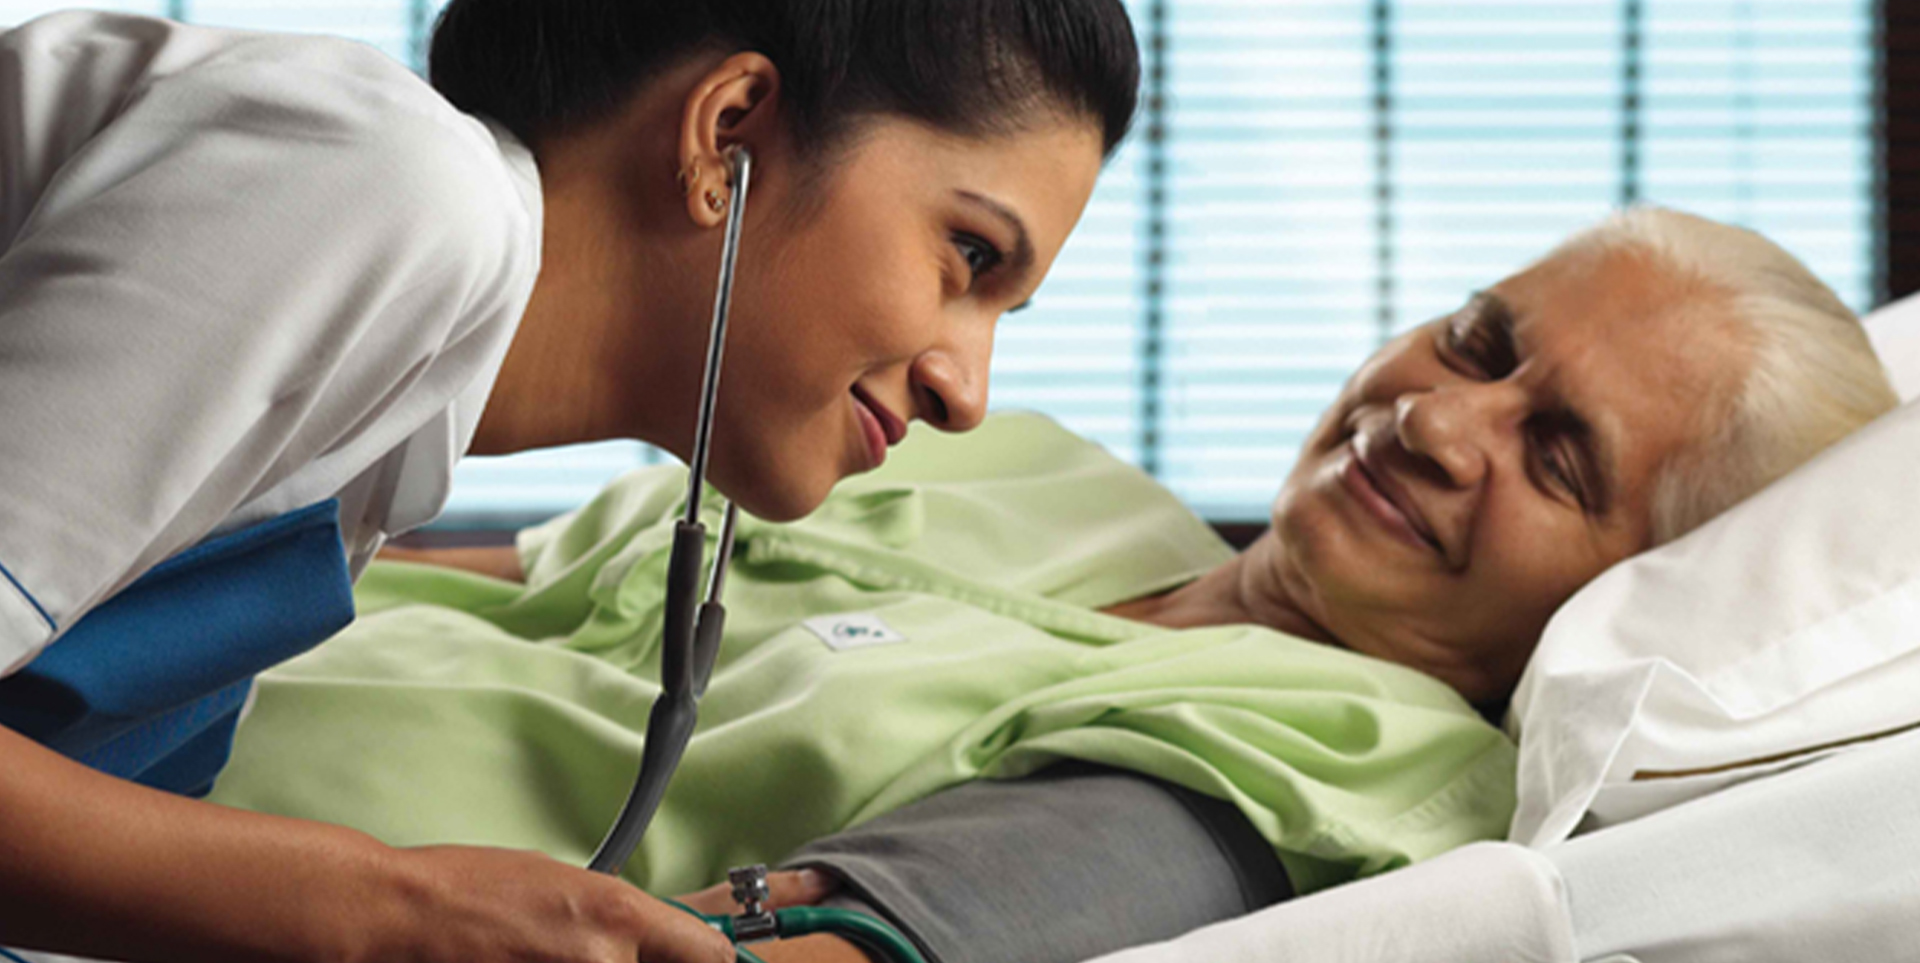 home nursing services in delhi – senocare